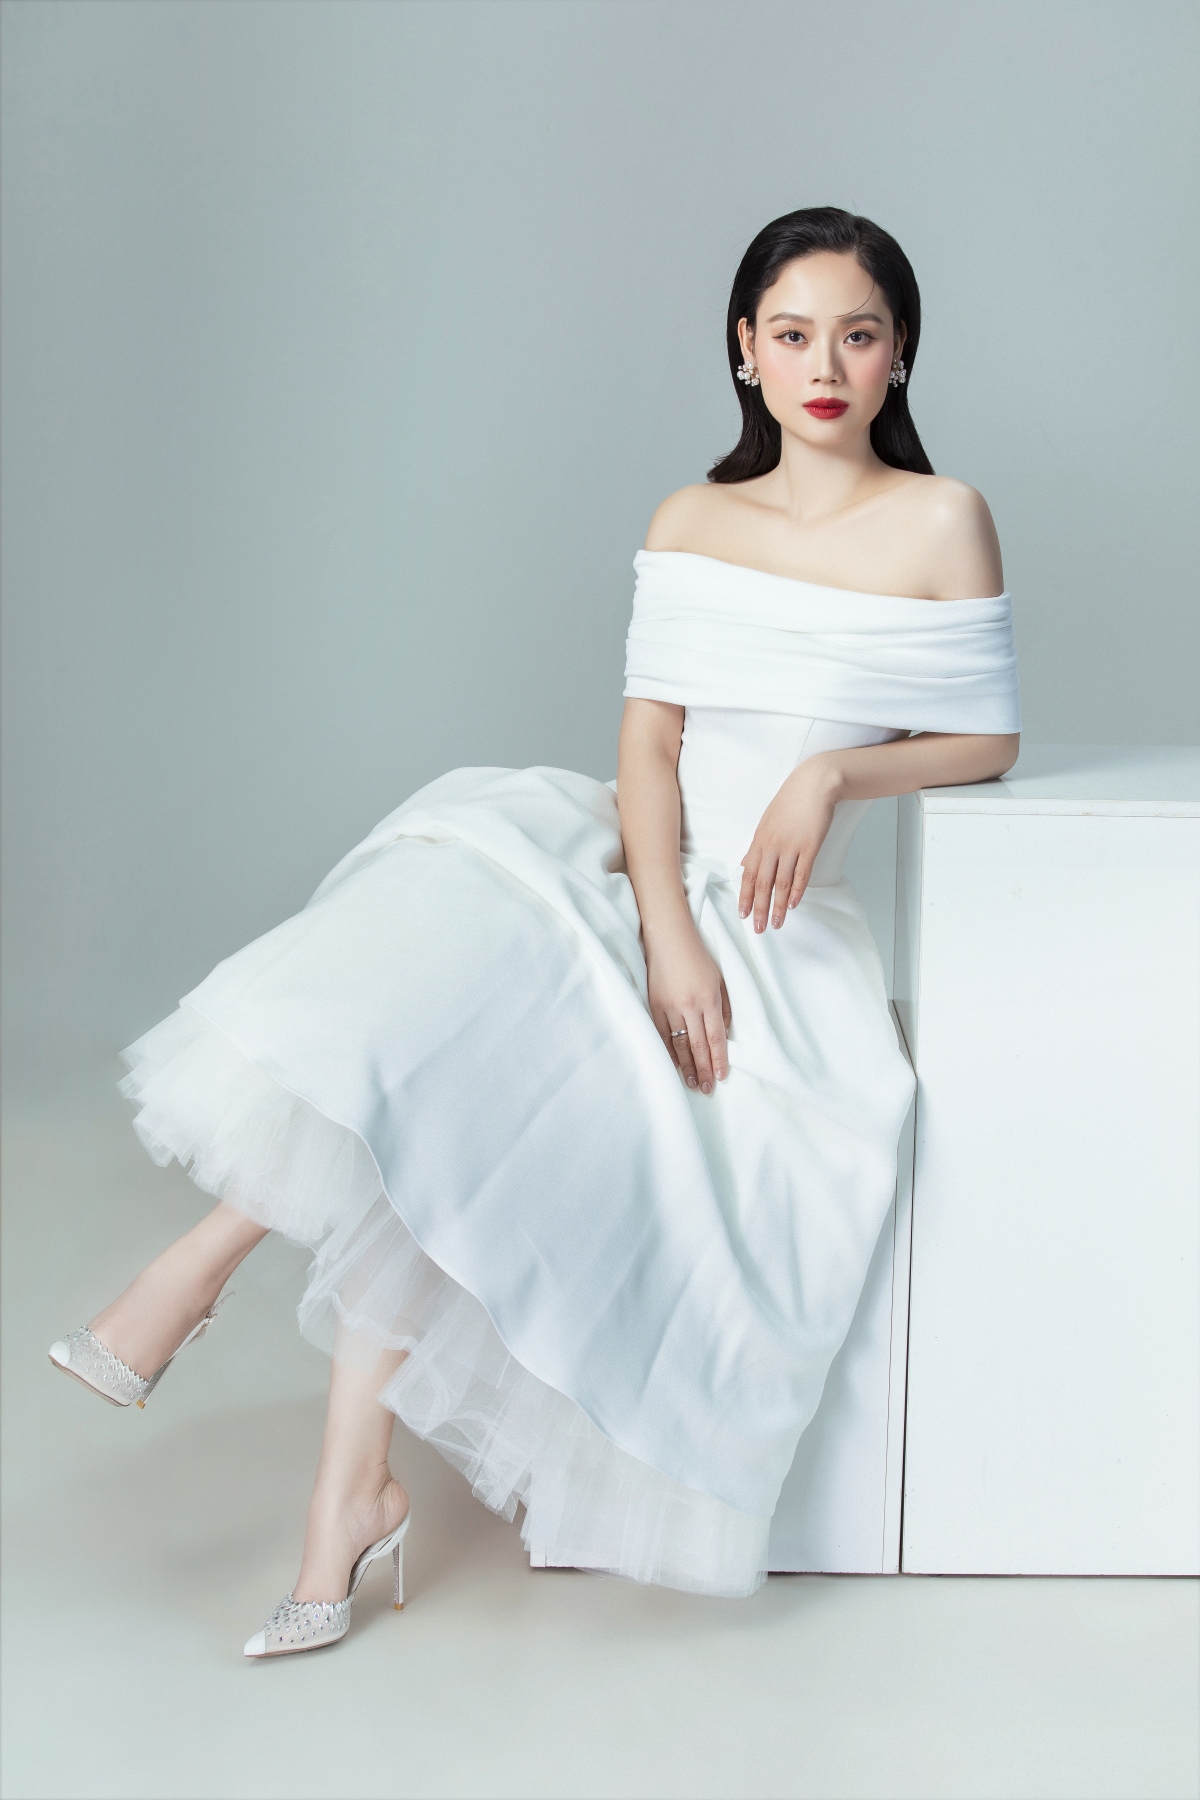 Hoa hậu Mai Phương đẹp kiêu sa trong bộ ảnh kỷ niệm 20 năm đăng quang - Ảnh 5.